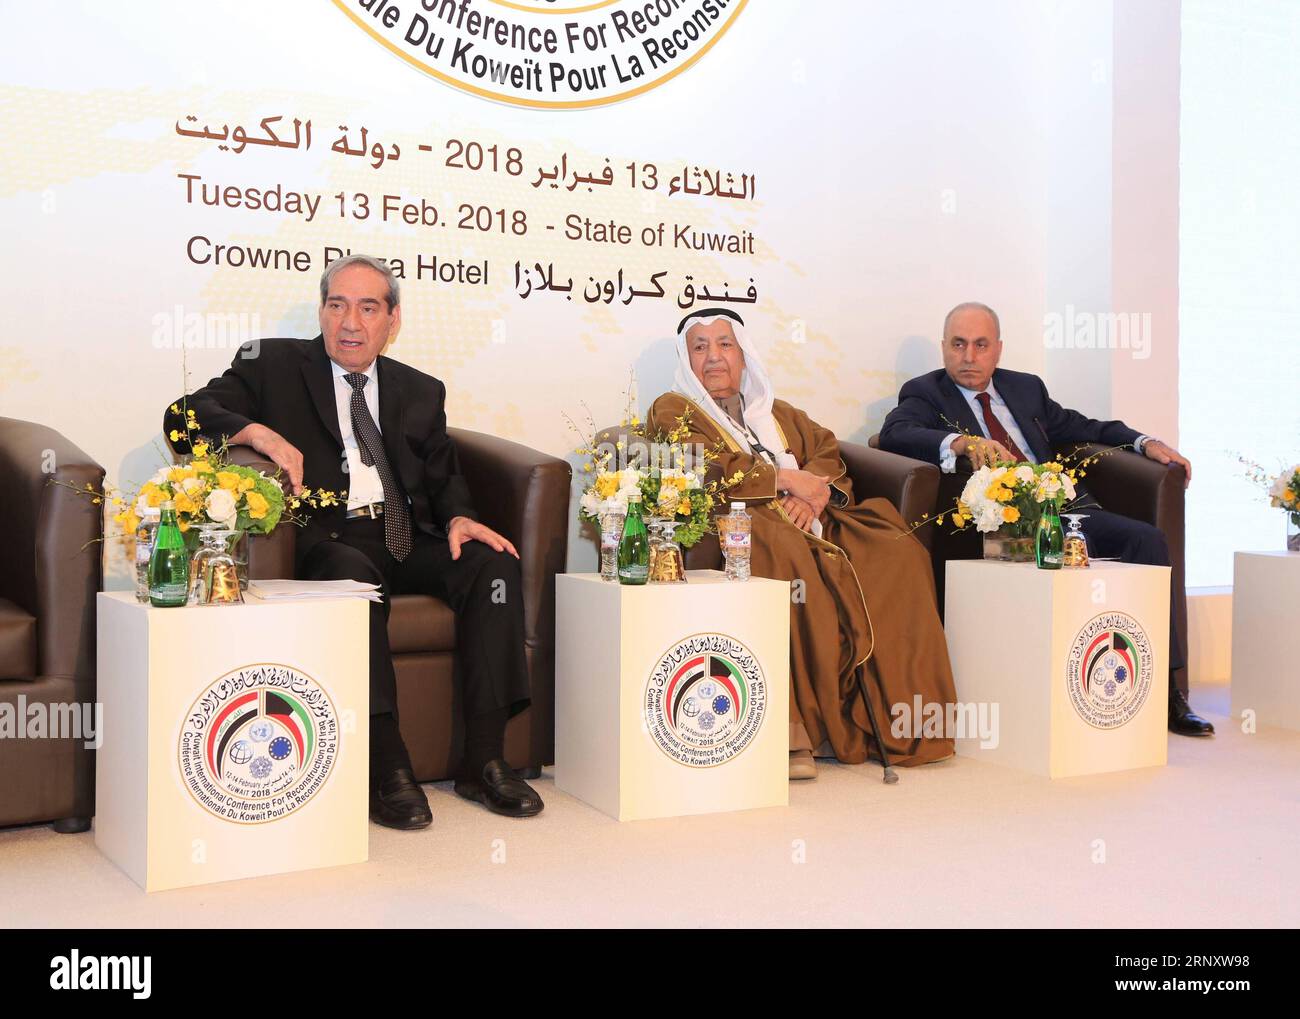 (180213) -- CITTÀ DEL KUWAIT, 13 febbraio 2018 -- il presidente della Commissione nazionale per gli investimenti irachena Sami al-Araji, il presidente della camera di commercio e dell'industria in Kuwait Ali Mohammed Thunayan al-Ghanim e il ministro della pianificazione irachena Salman al Jumaili (da L a R) partecipa alla conferenza sugli investimenti in Iraq, il 13 febbraio 2018, a Kuwait City, Kuwait. La conferenza è uno degli eventi che comprendono la Conferenza internazionale del Kuwait per la ricostruzione dell'Iraq (KICRI), che ha preso il via lunedì a Kuwait City. ) (psw) CONFERENZA KUWAIT-KUWAIT SUGLI INVESTIMENTI IN IRAQ NiexYunpeng PUBLICATIONxNOTx Foto Stock